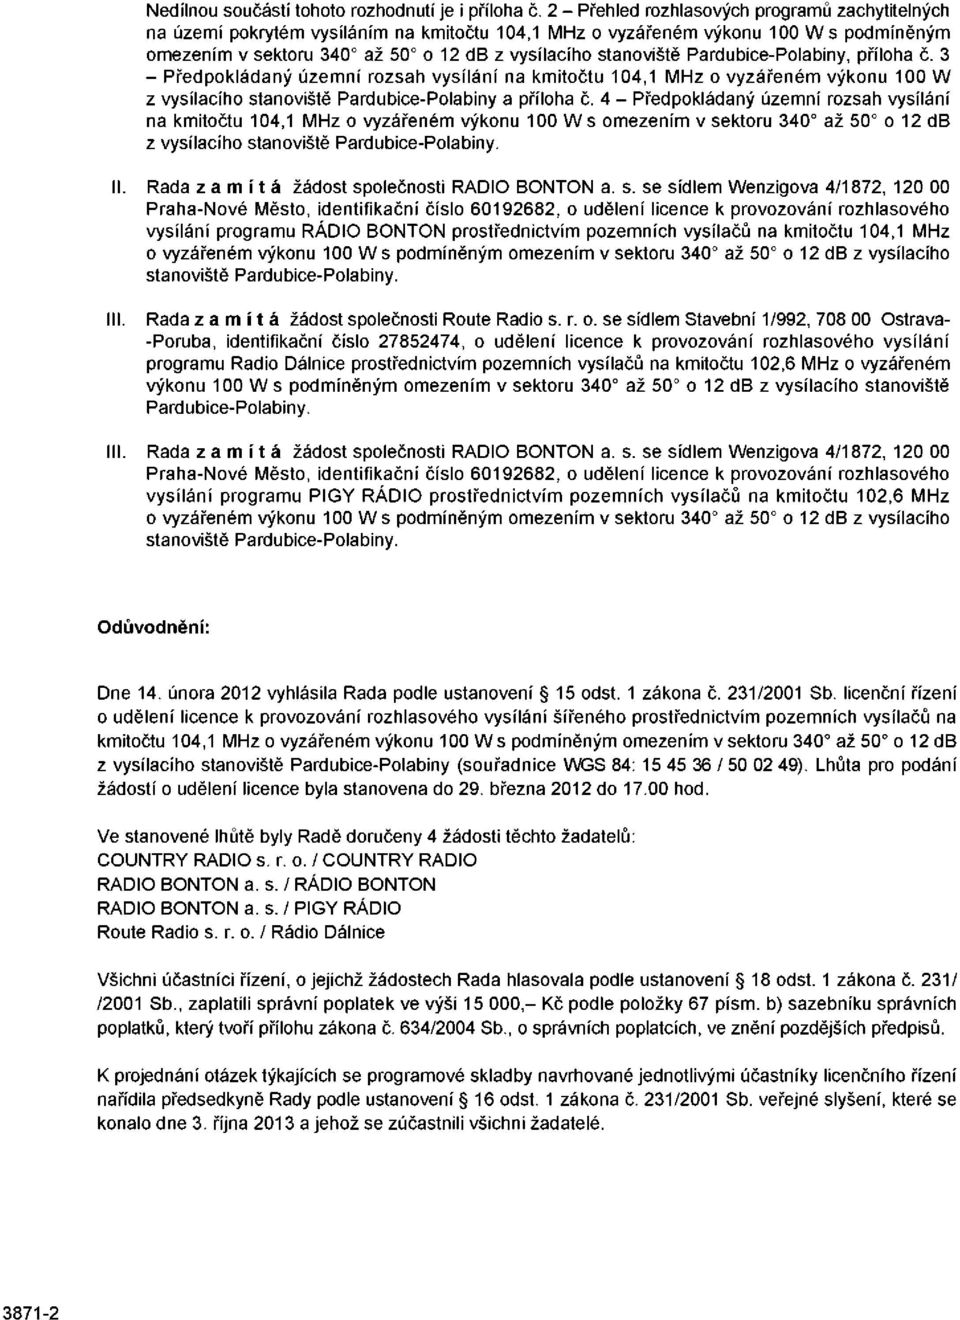 Pardubice-Polabiny, příloha č. 3 - Předpokládaný územní rozsah vysílání na kmitočtu 104,1 MHz o vyzářeném výkonu 100 W z vysílacího stanoviště Pardubice-Polabiny a příloha č.